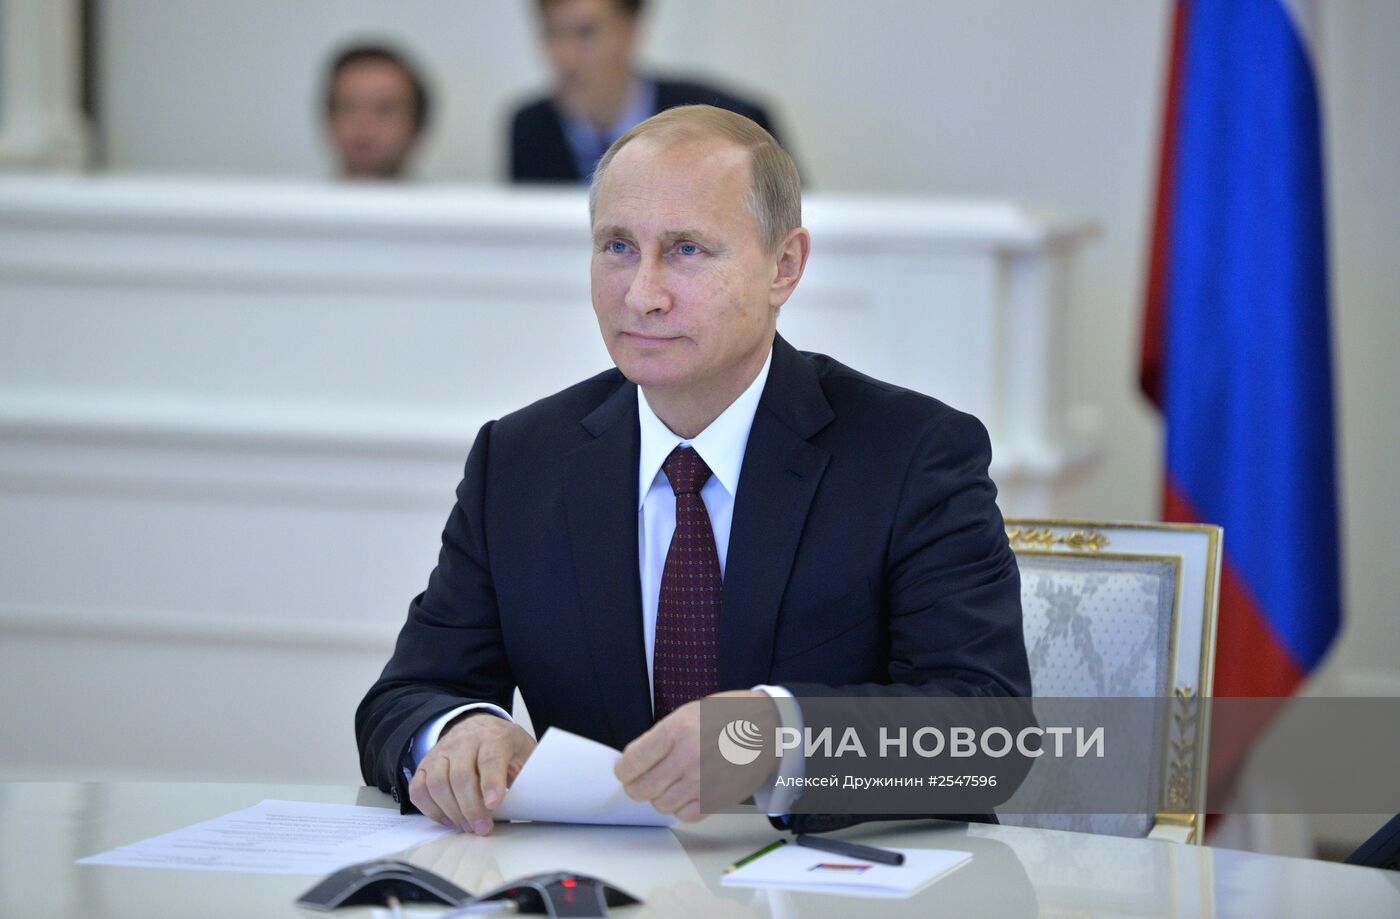 В.Путин принял участие в запуске газового промысла № 1 – Бованенковского месторождения